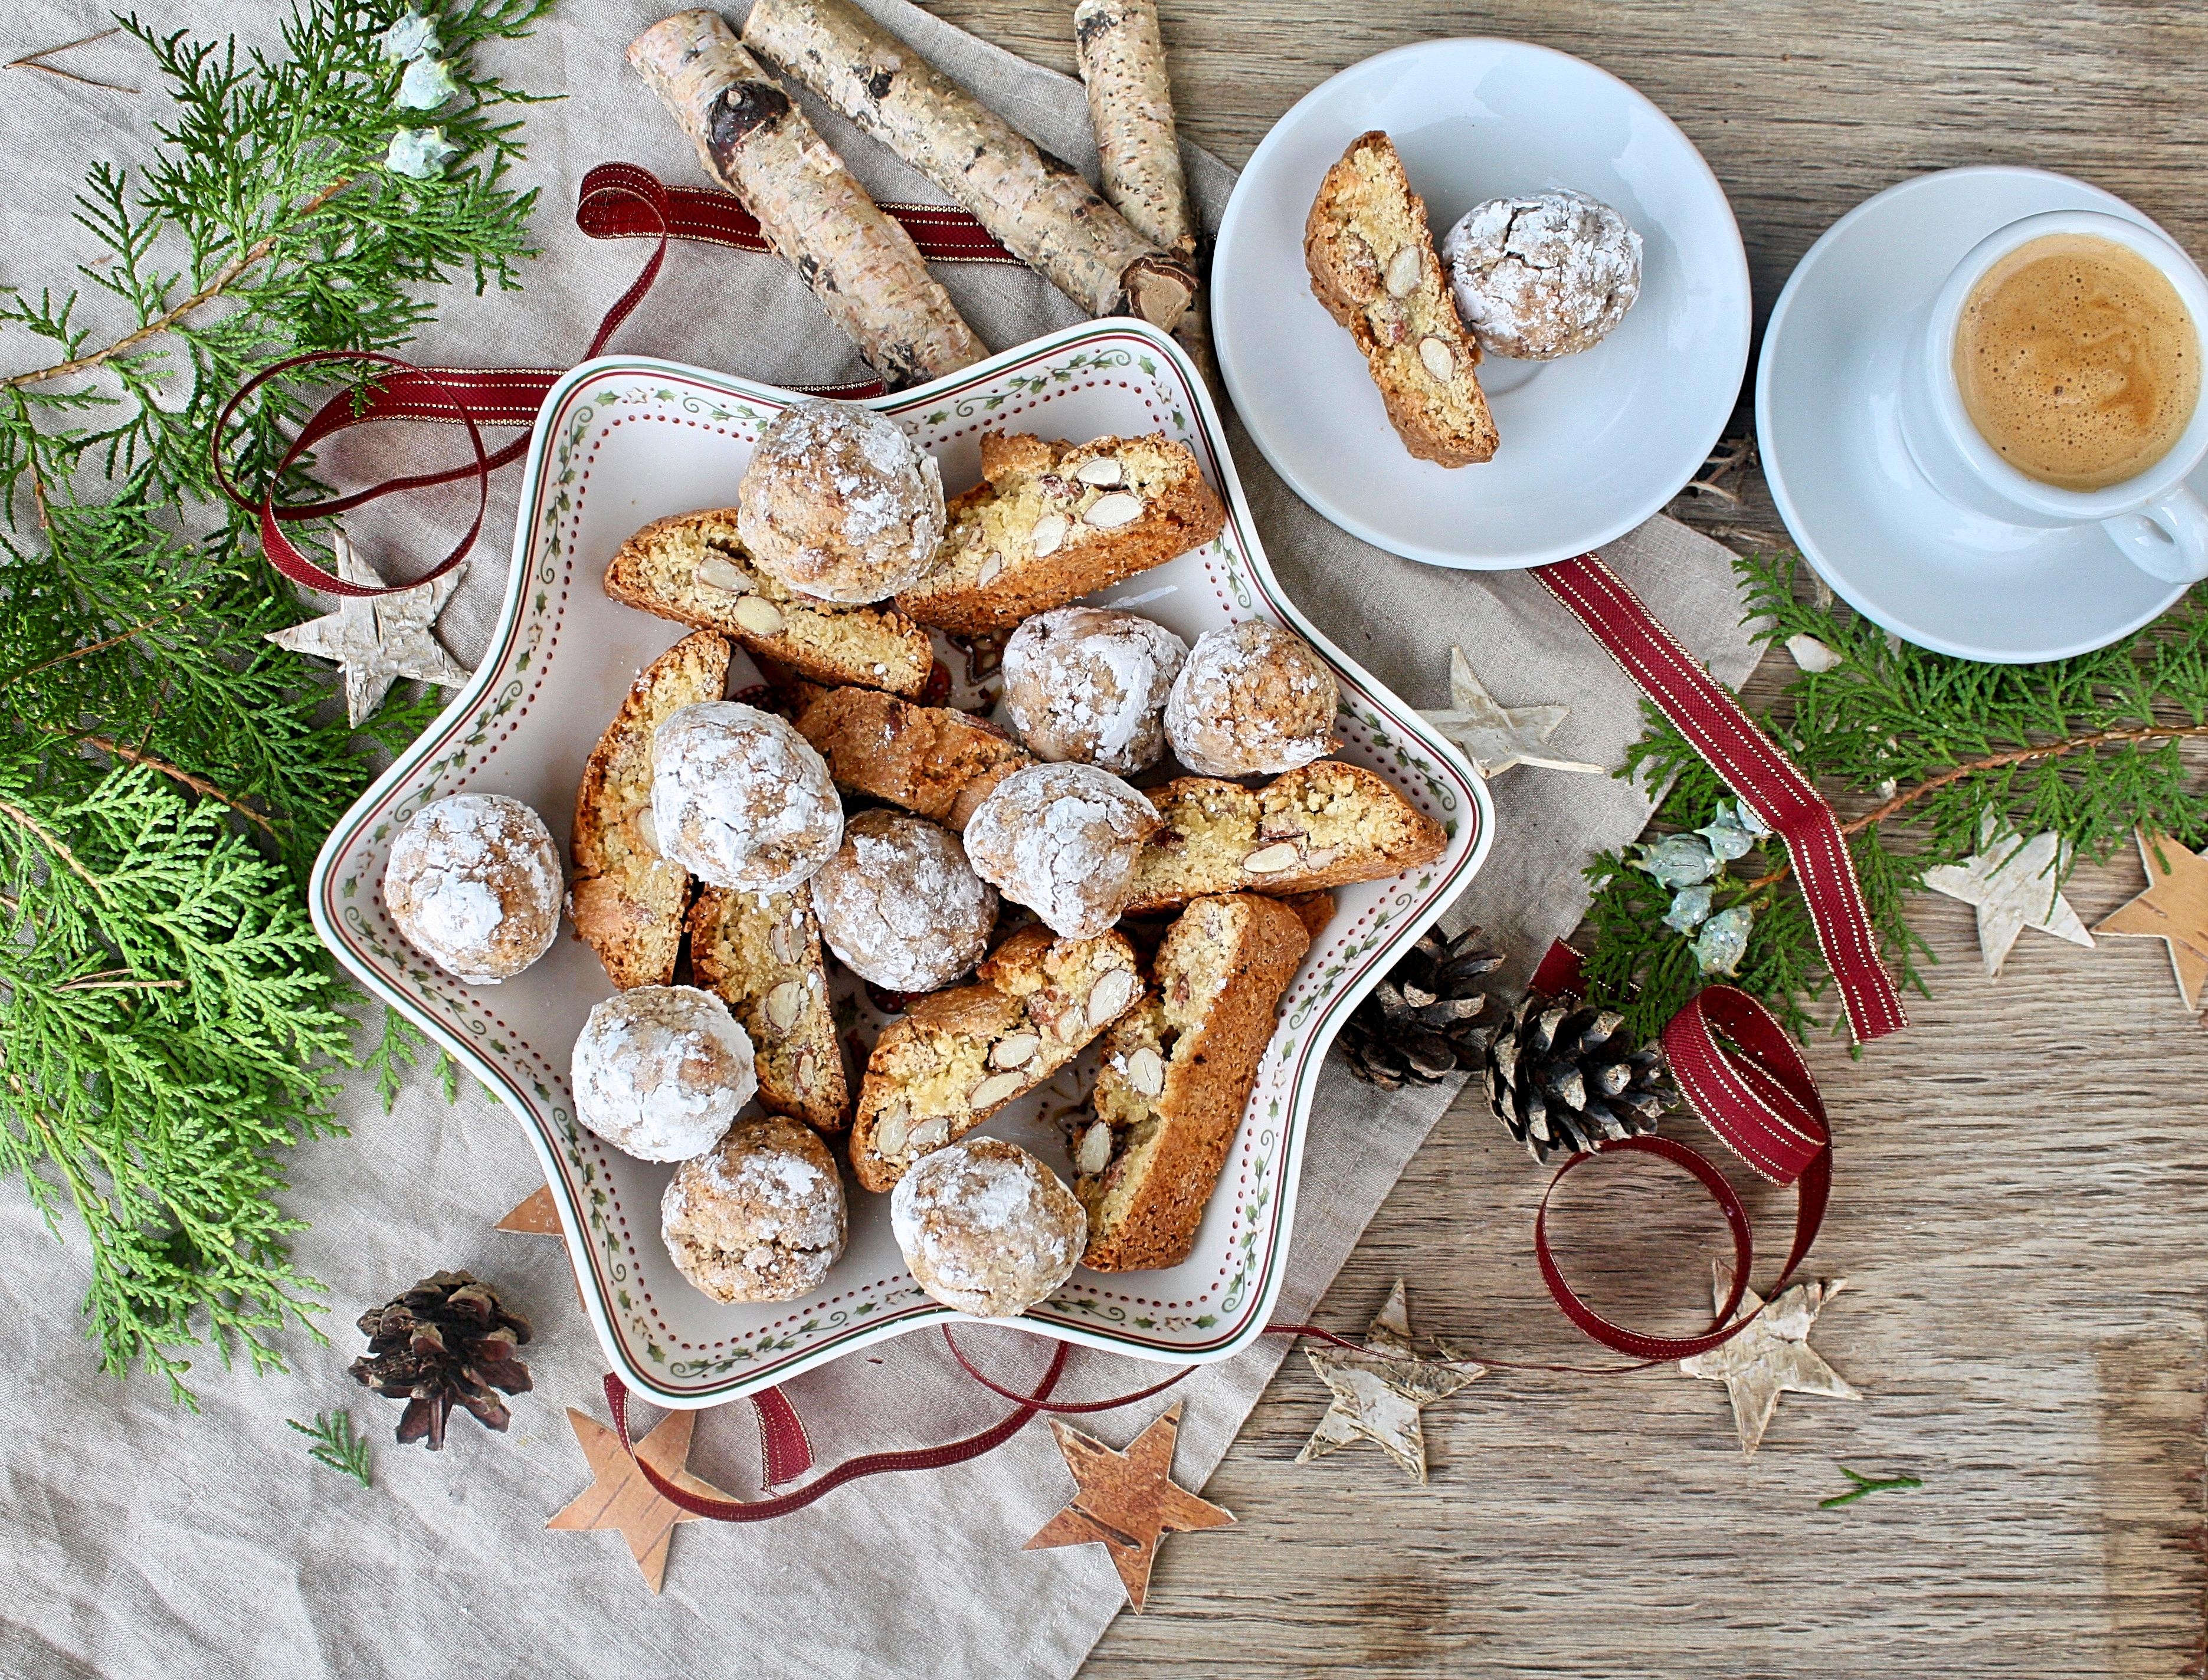 Cantuccini und Amaretti, die italienischen Weihnachtsklassiker

#weihnachten#weihnachtsbäckerei